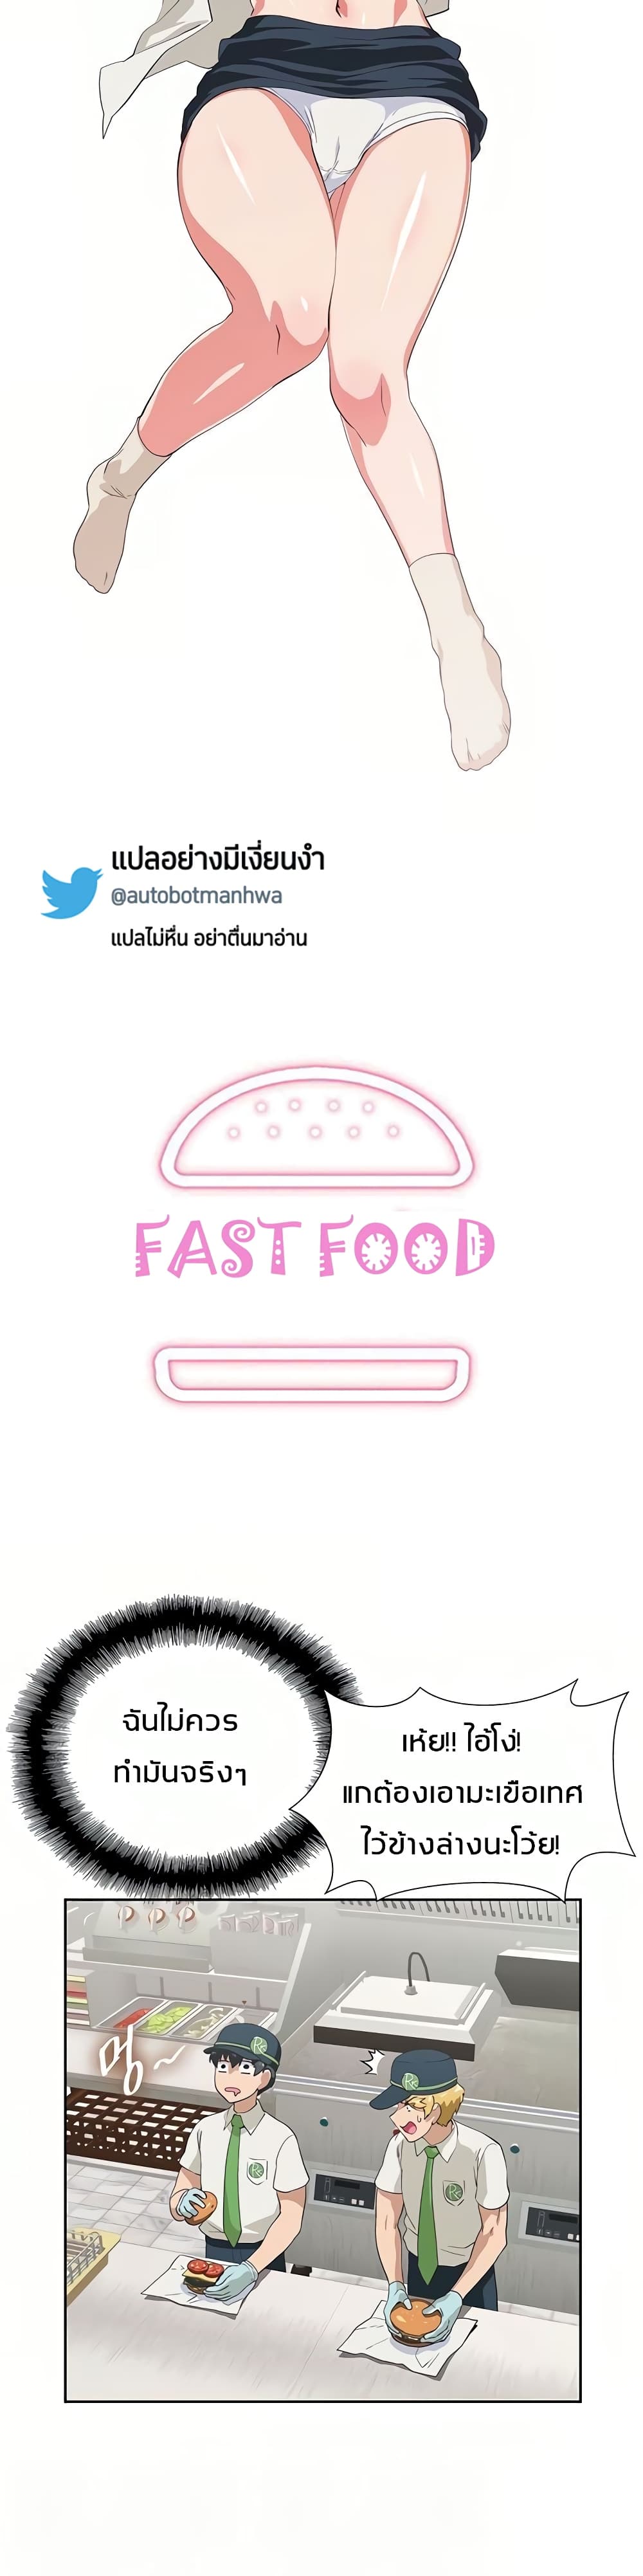 Fast Food 9 (4)